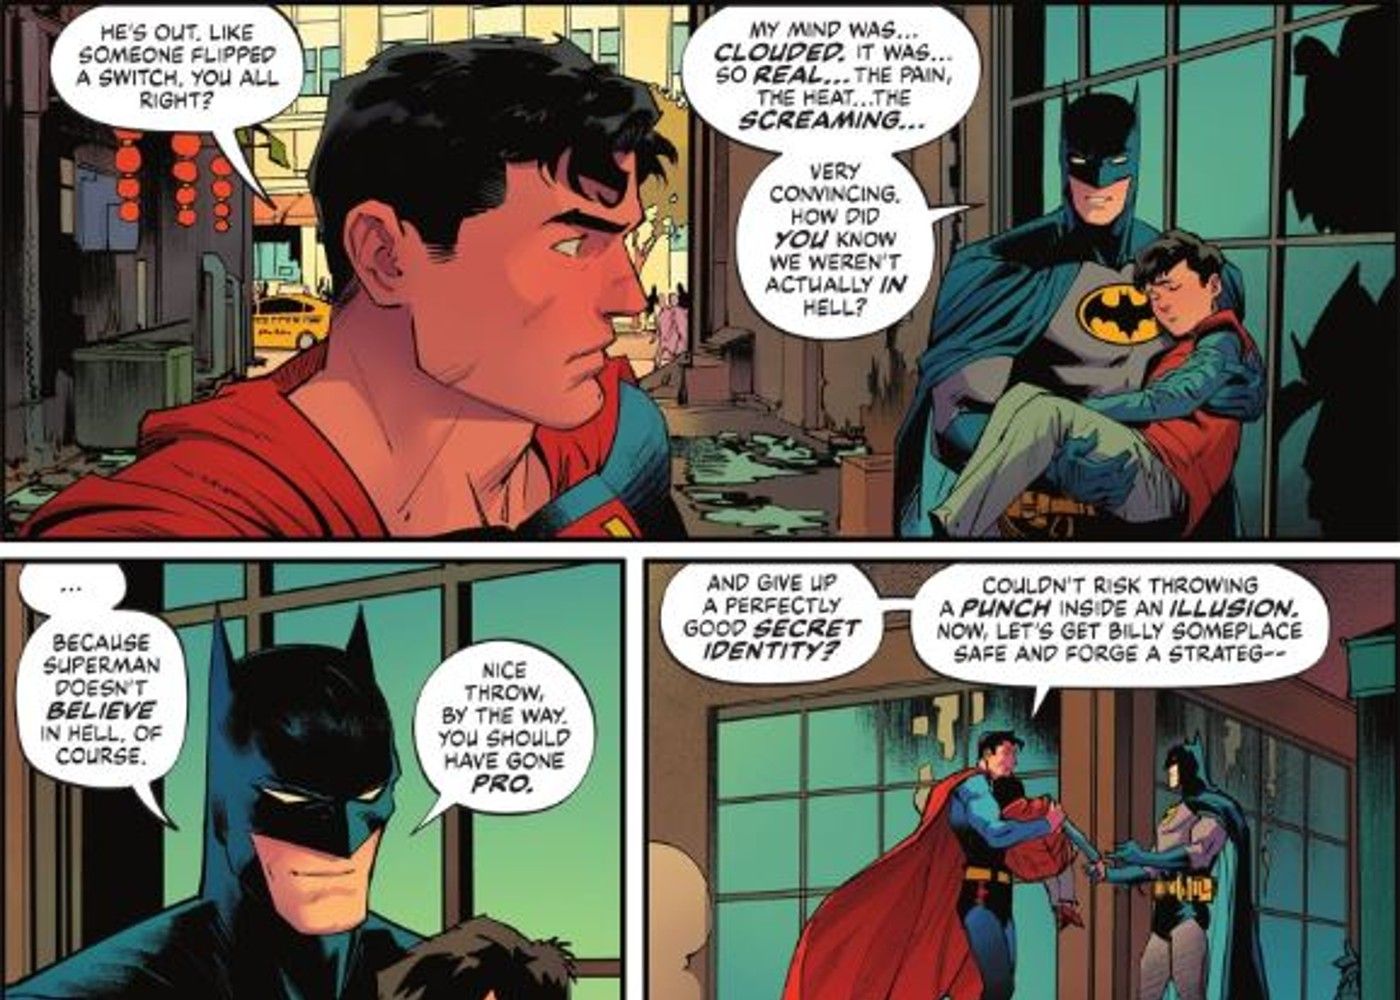 Batman recognizes Supermans Faith